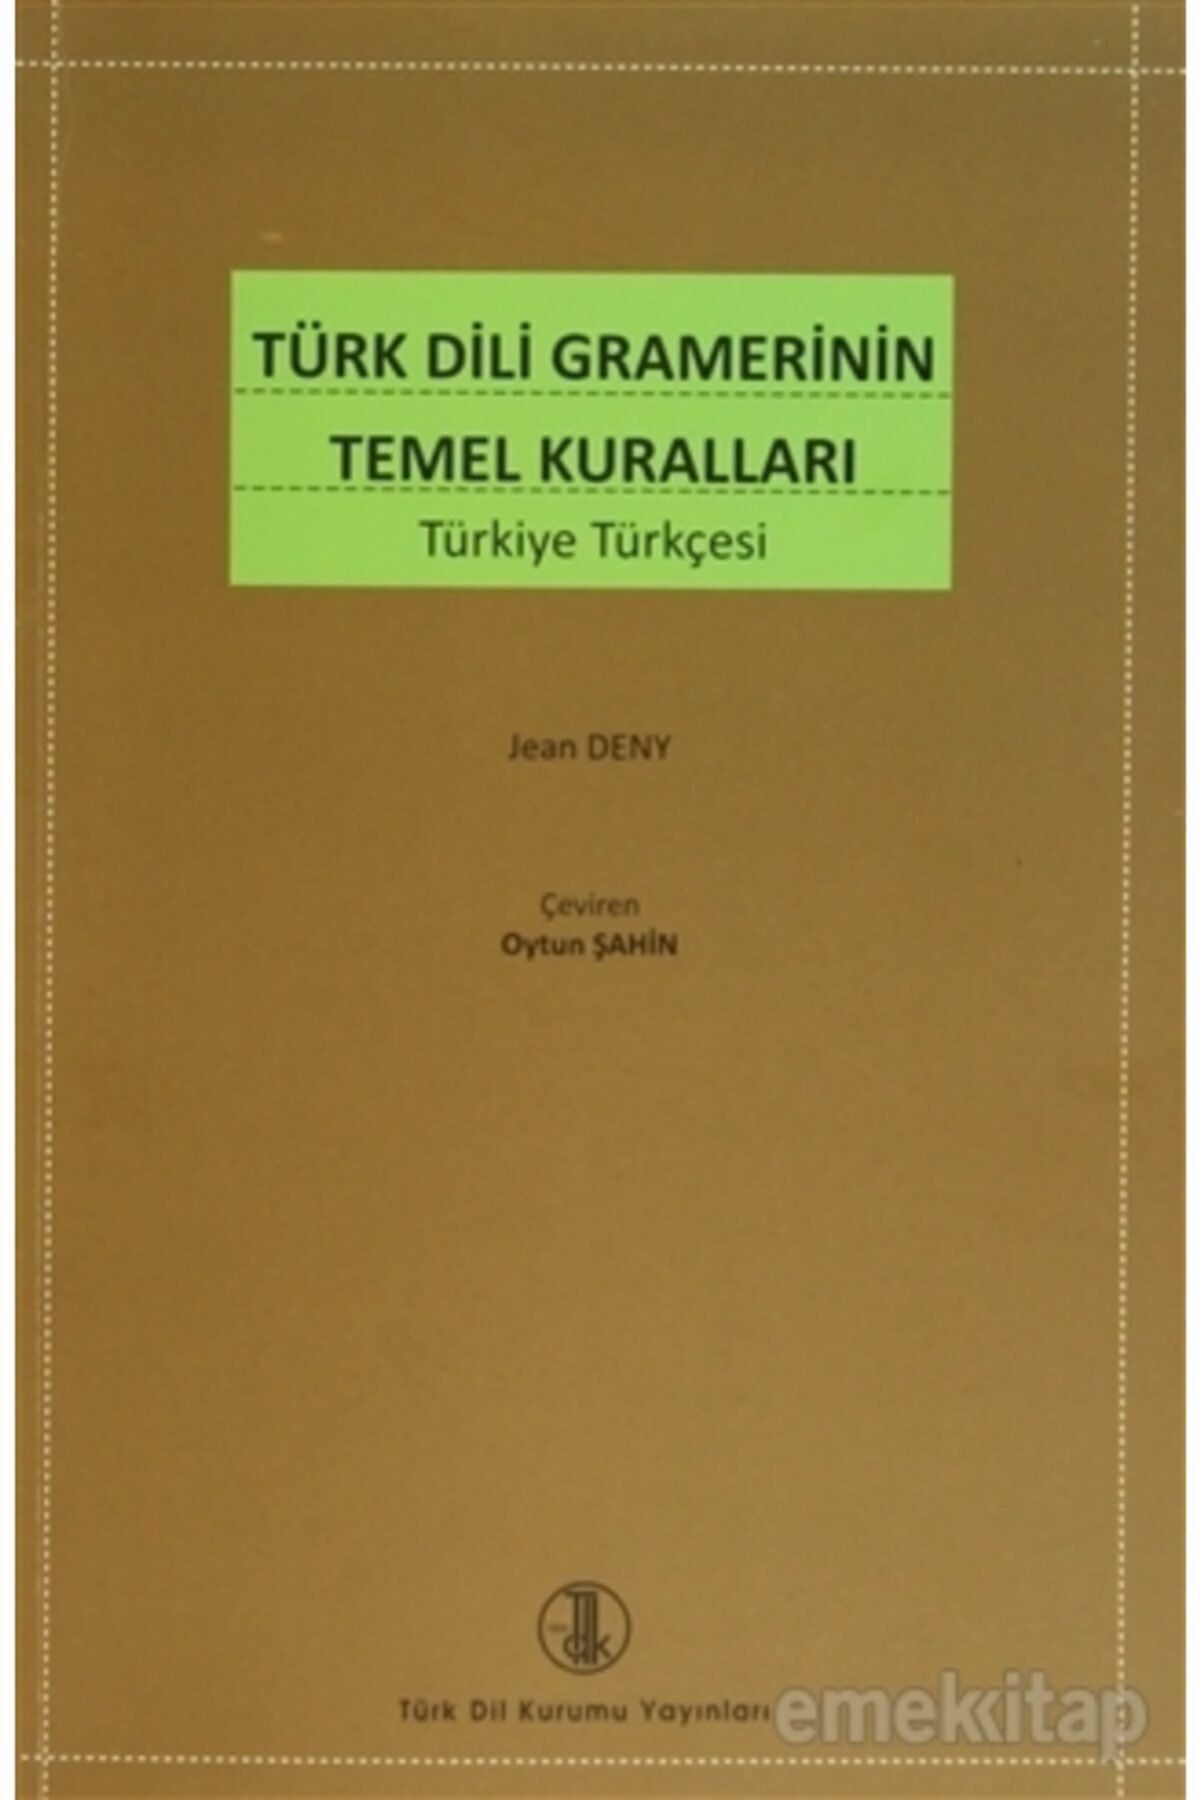 Türk Dil Kurumu Yayınları Türk Dili Gramerinin Temel Kuralları - Jean Deny 9789751607300